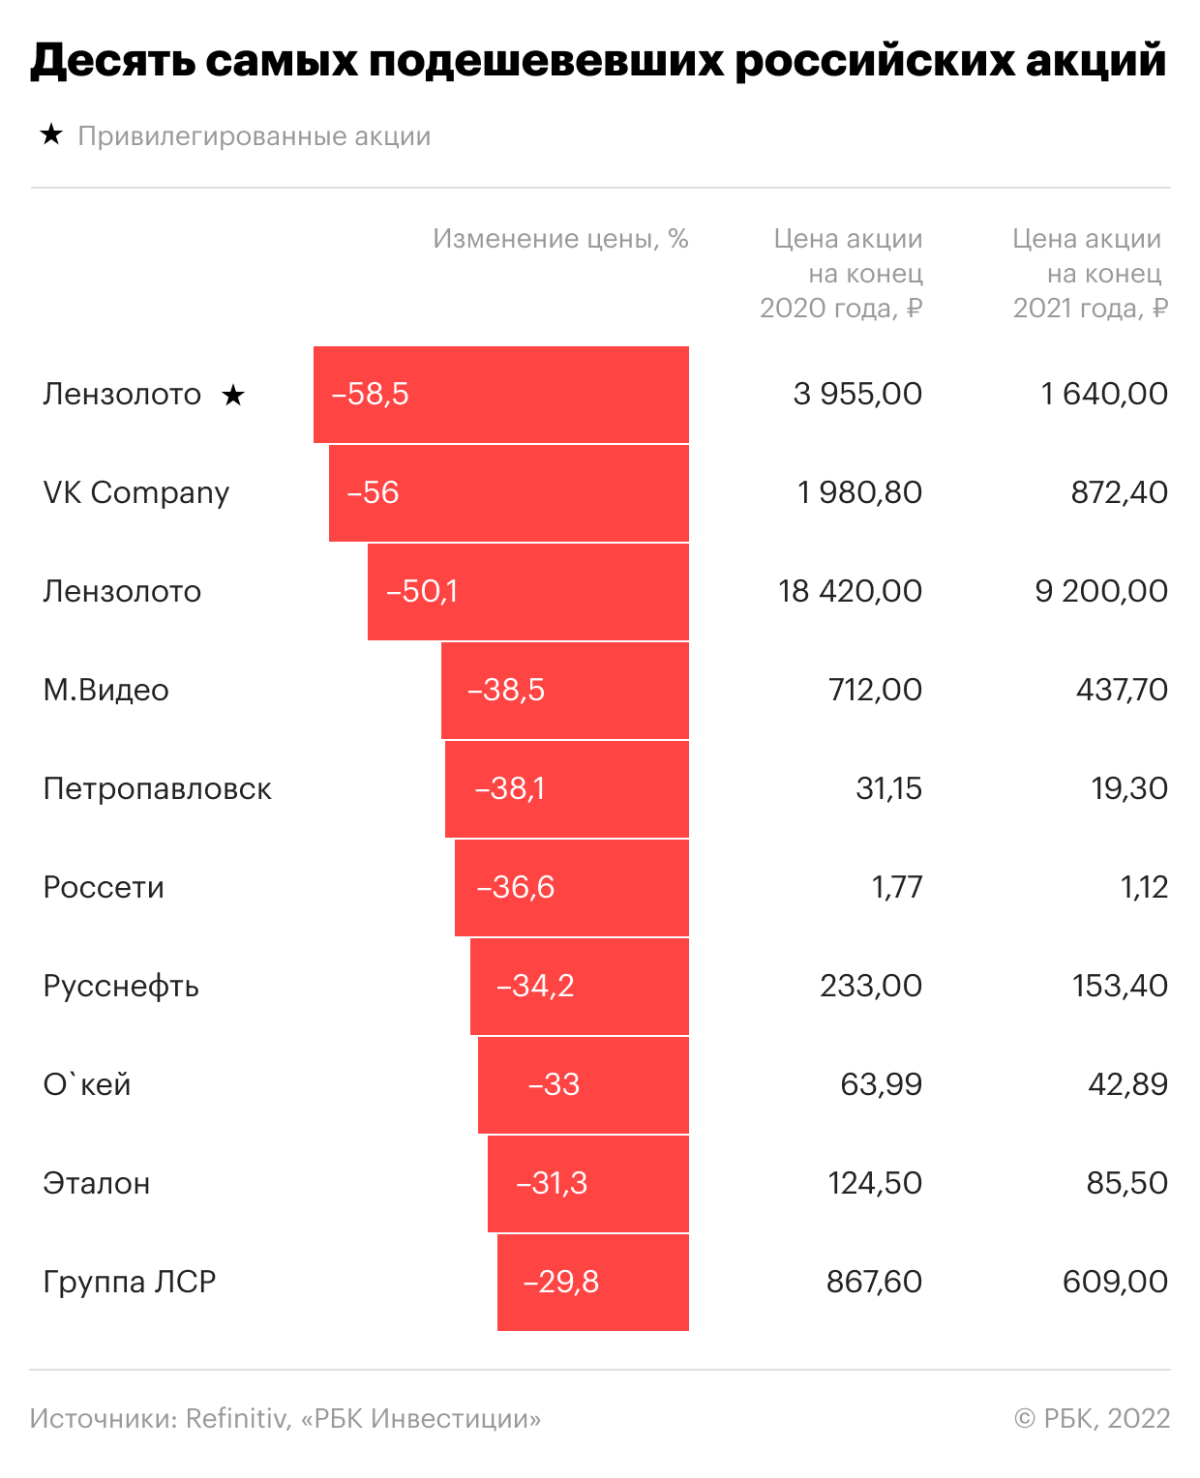 Десять самых подешевевших российских акций